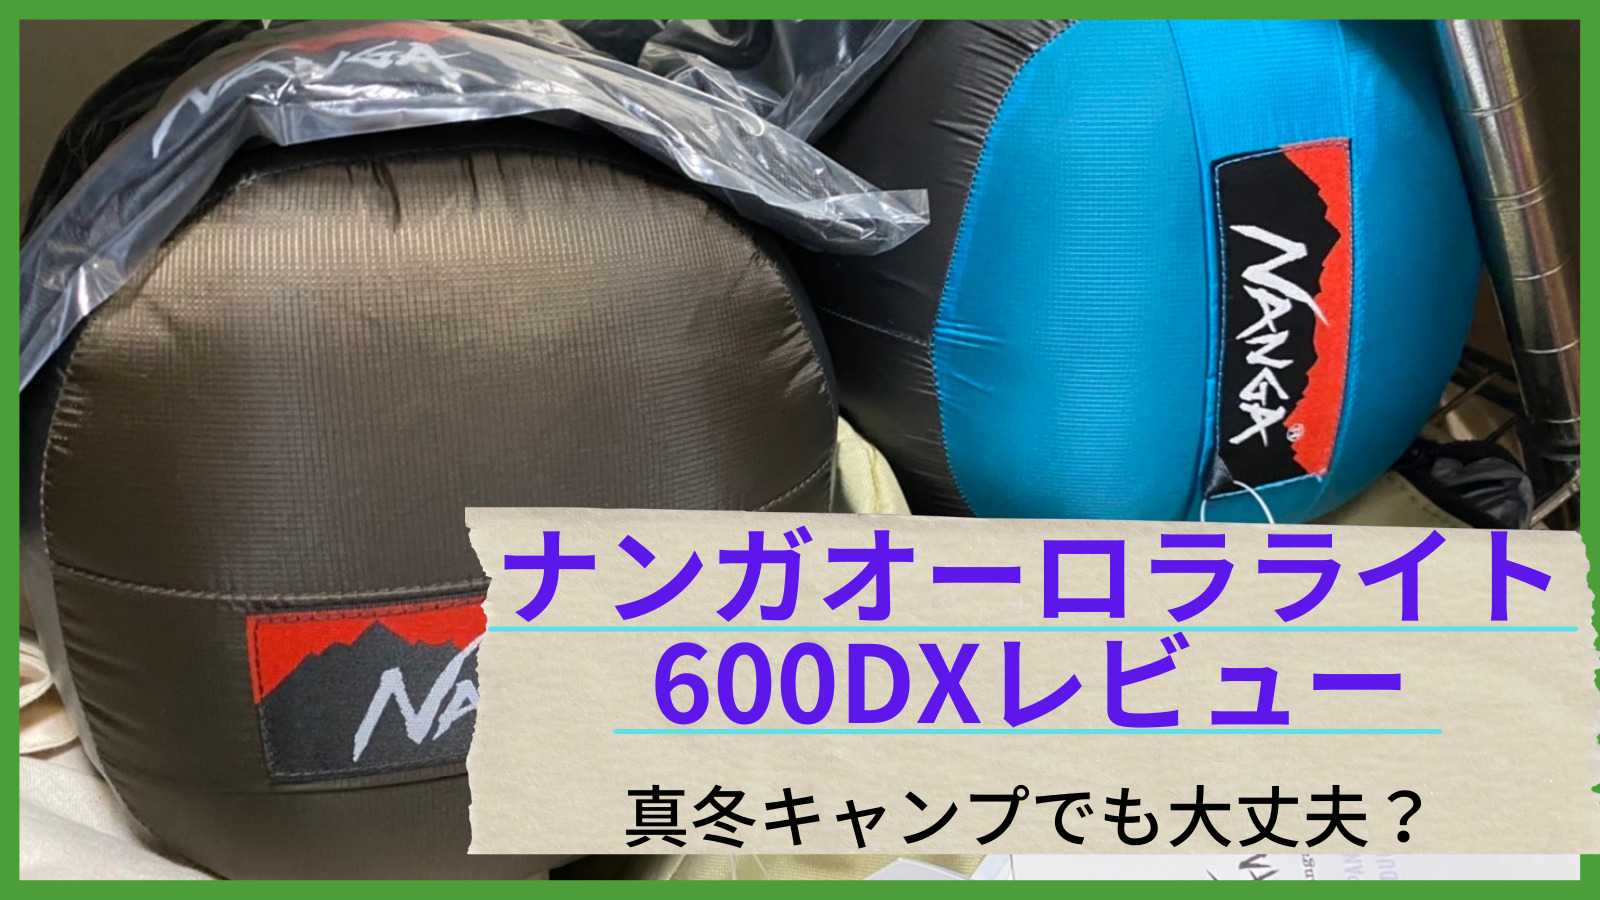 【新品未開封】NANGA AURORA light 600DX ブラック